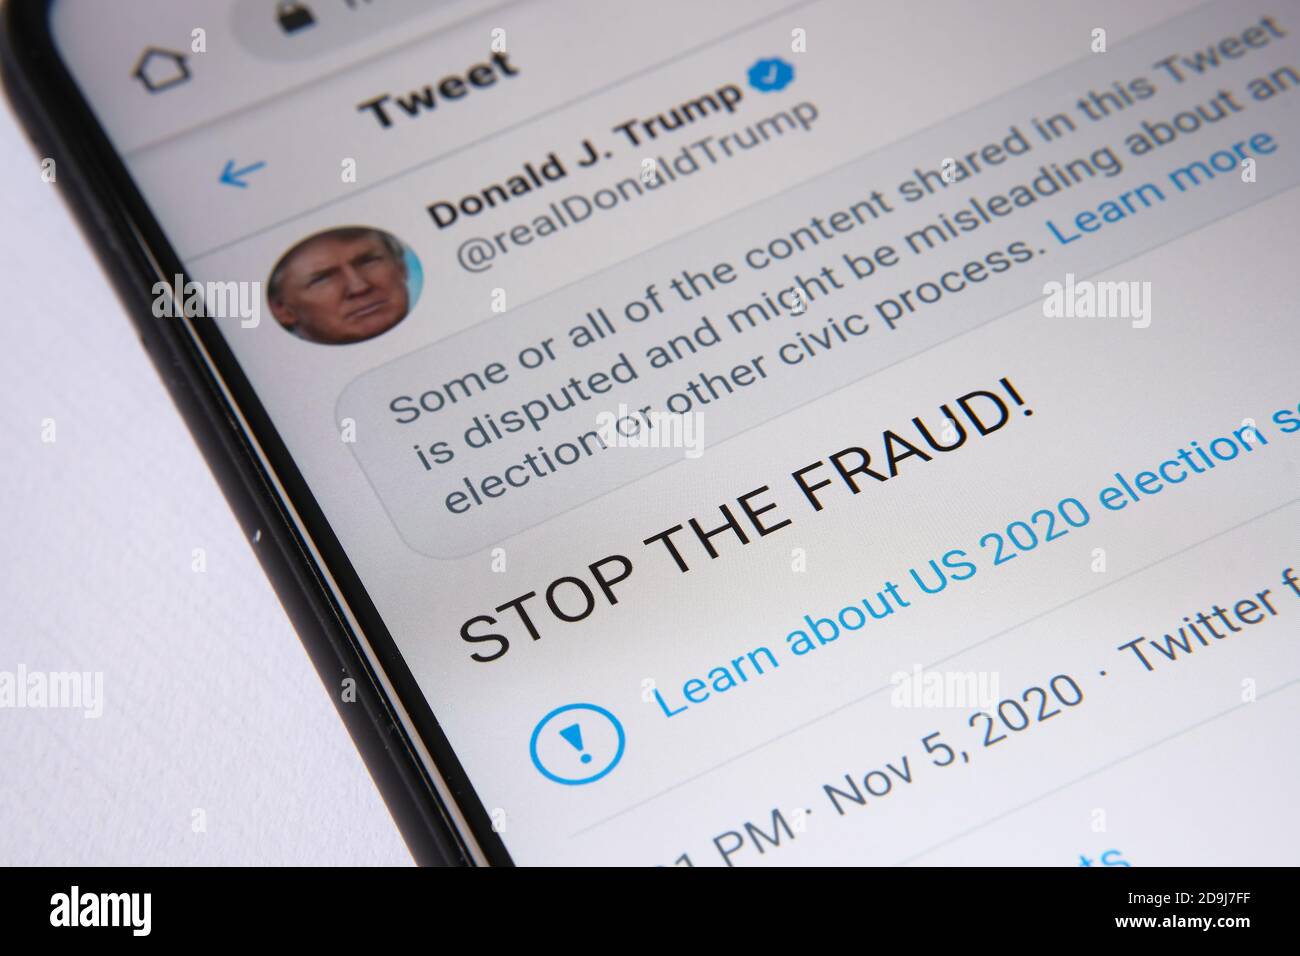 Twitter calificó el tuit oficial de Donald Trump "DETENER EL FRAUDE" como "desdichado". La página se muestra en la pantalla del smartphone. Concepto. Foto de stock